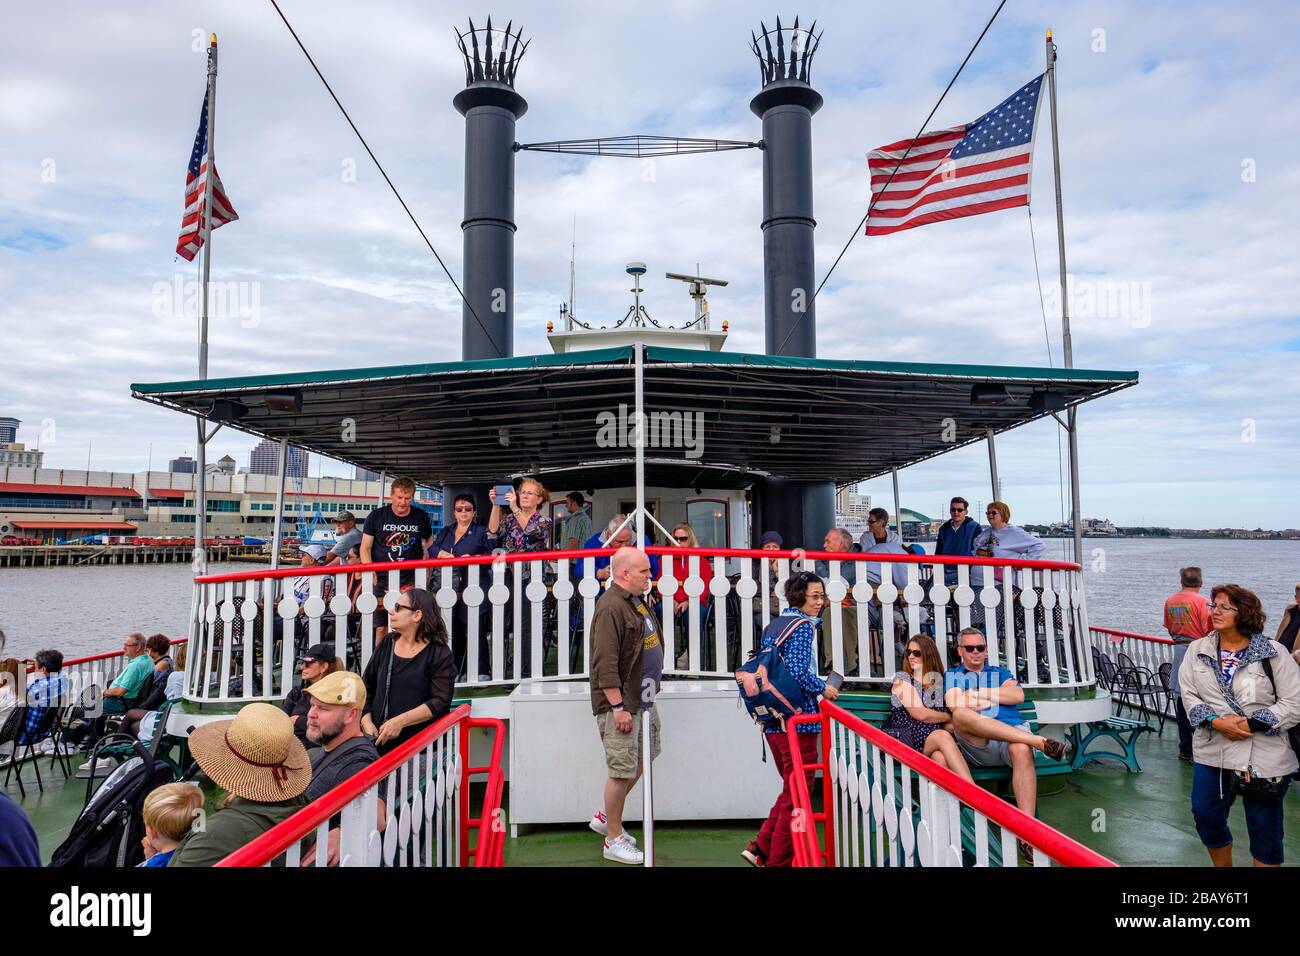 Touristes sur le pont de Steamboat Natchez, passagers en tournée, fleuve Mississippi, la Nouvelle-Orléans, Louisiane, États-Unis Banque D'Images